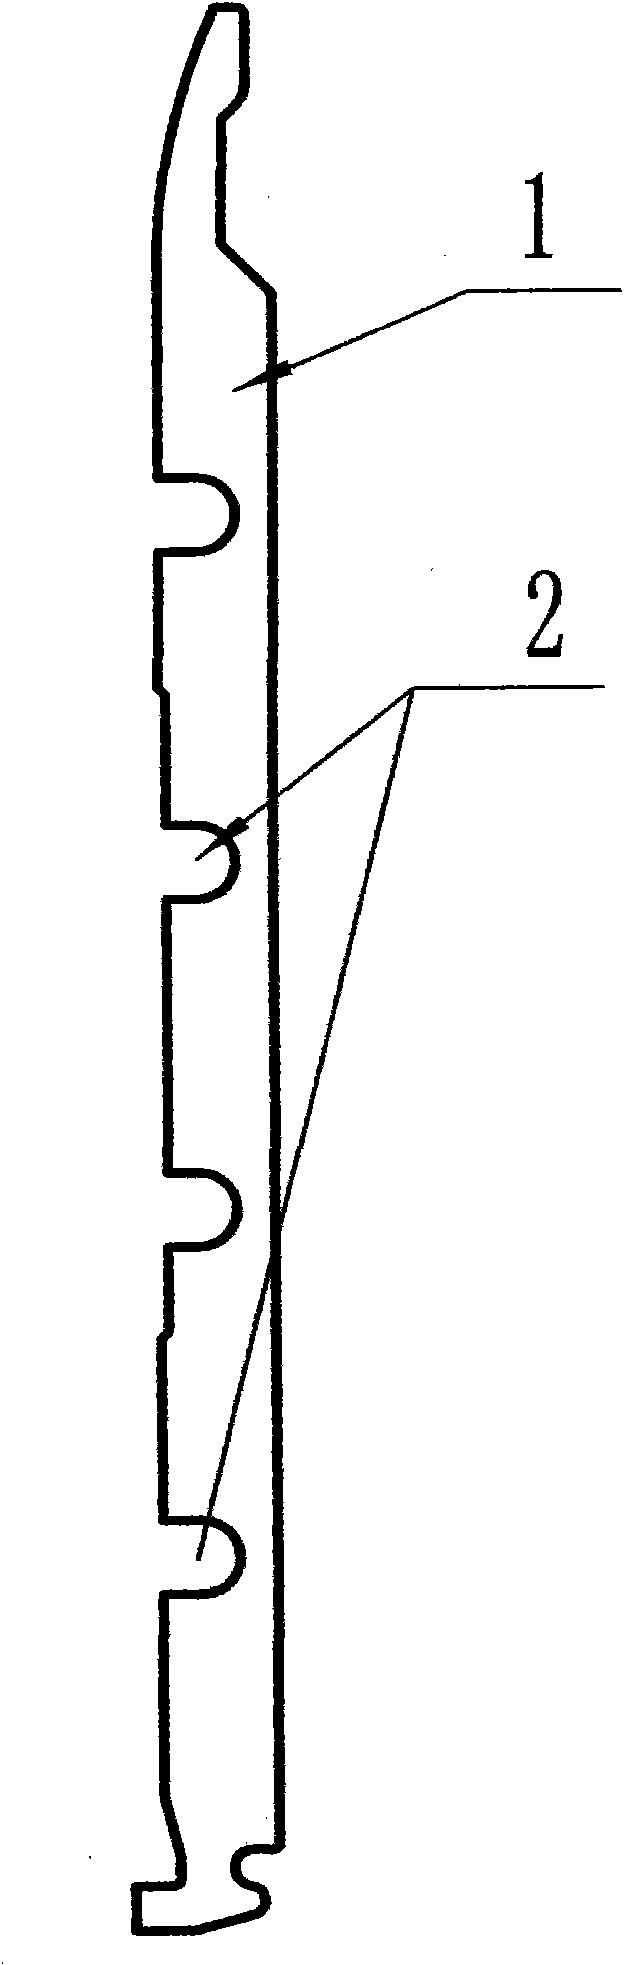 Improved type needle cylinder illustration